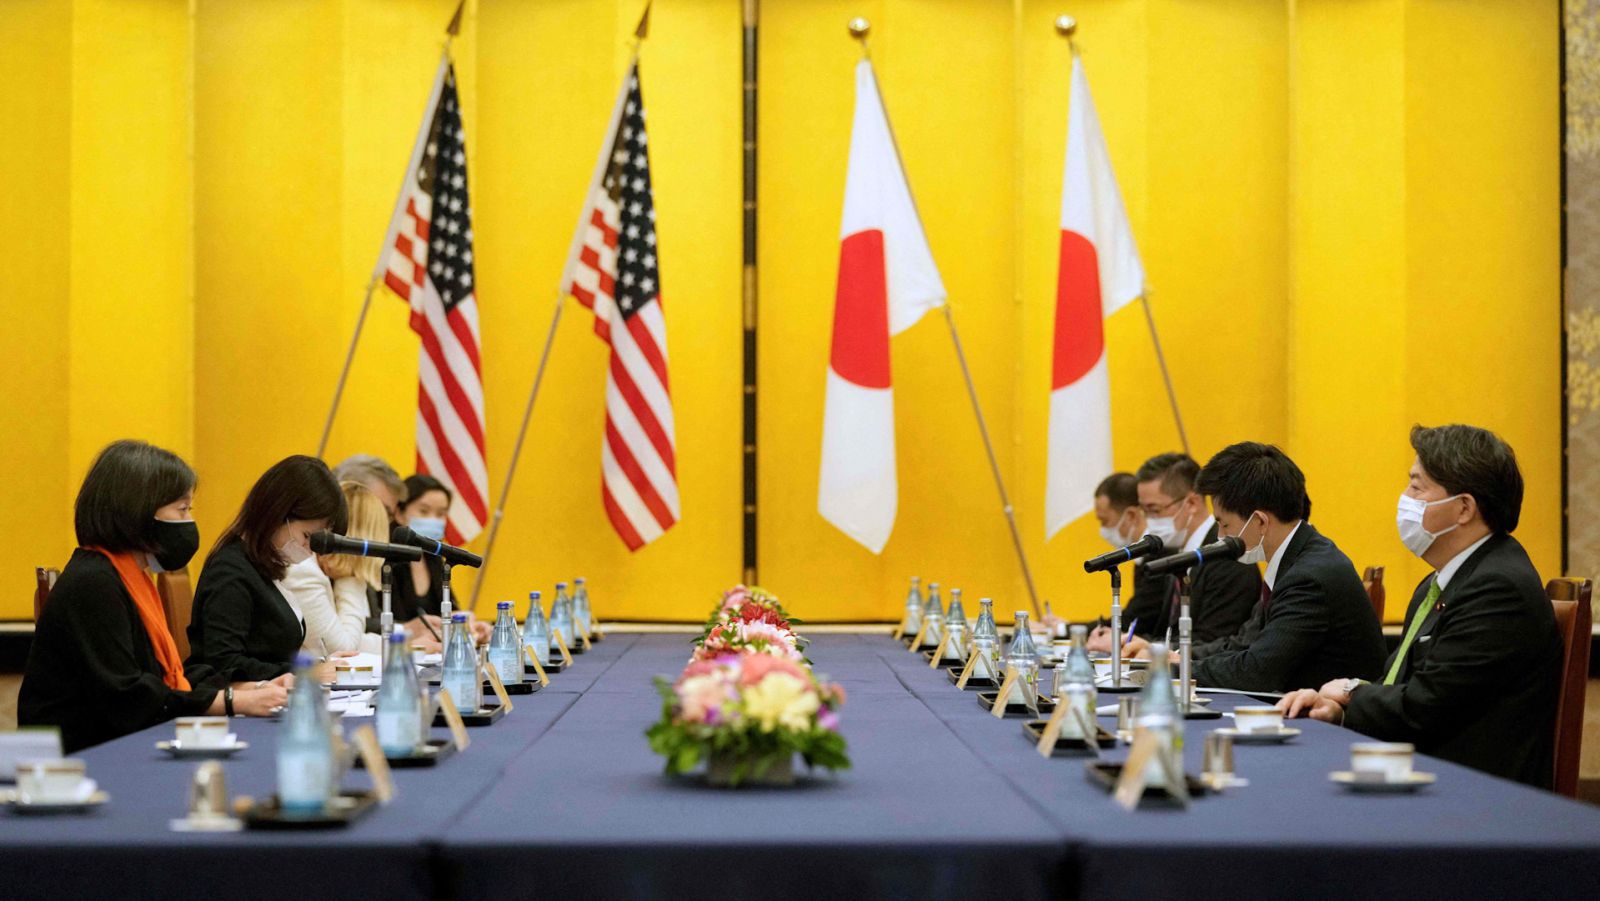  Đại diện Thương mại Mỹ nêu ý tưởng về khuôn khổ kinh tế mới giữa Mỹ vàp/châu Á trong cuộc gặp Bộ trưởng Ngoại giao Nhật hôm 17/11/2021. Ảnh: Getty.